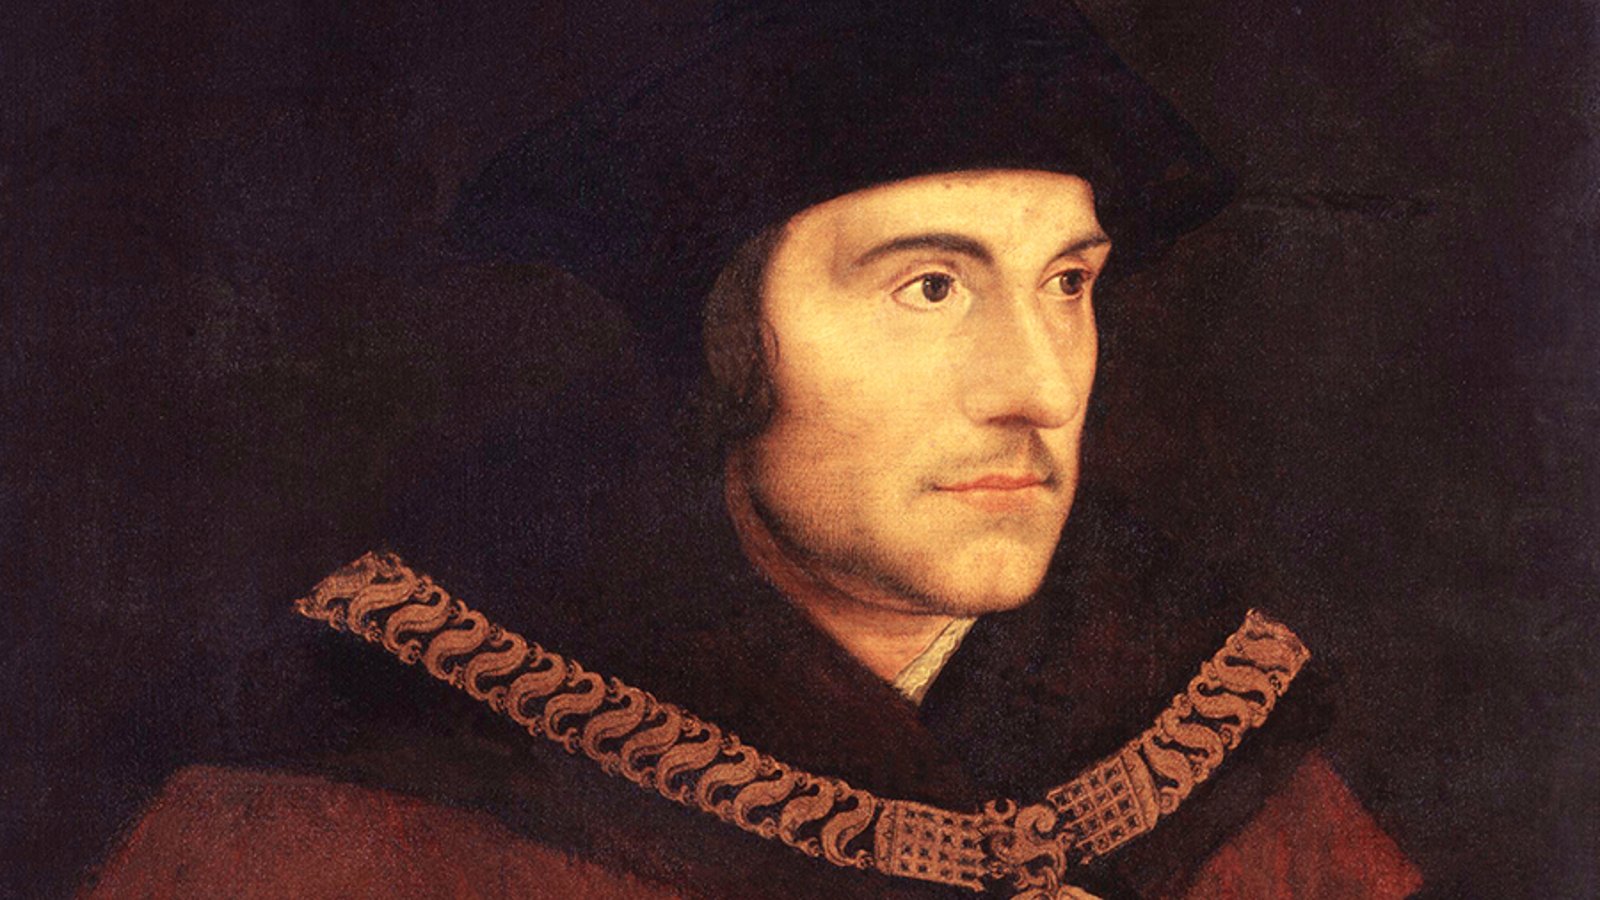 Thomas More and Utopian Origins